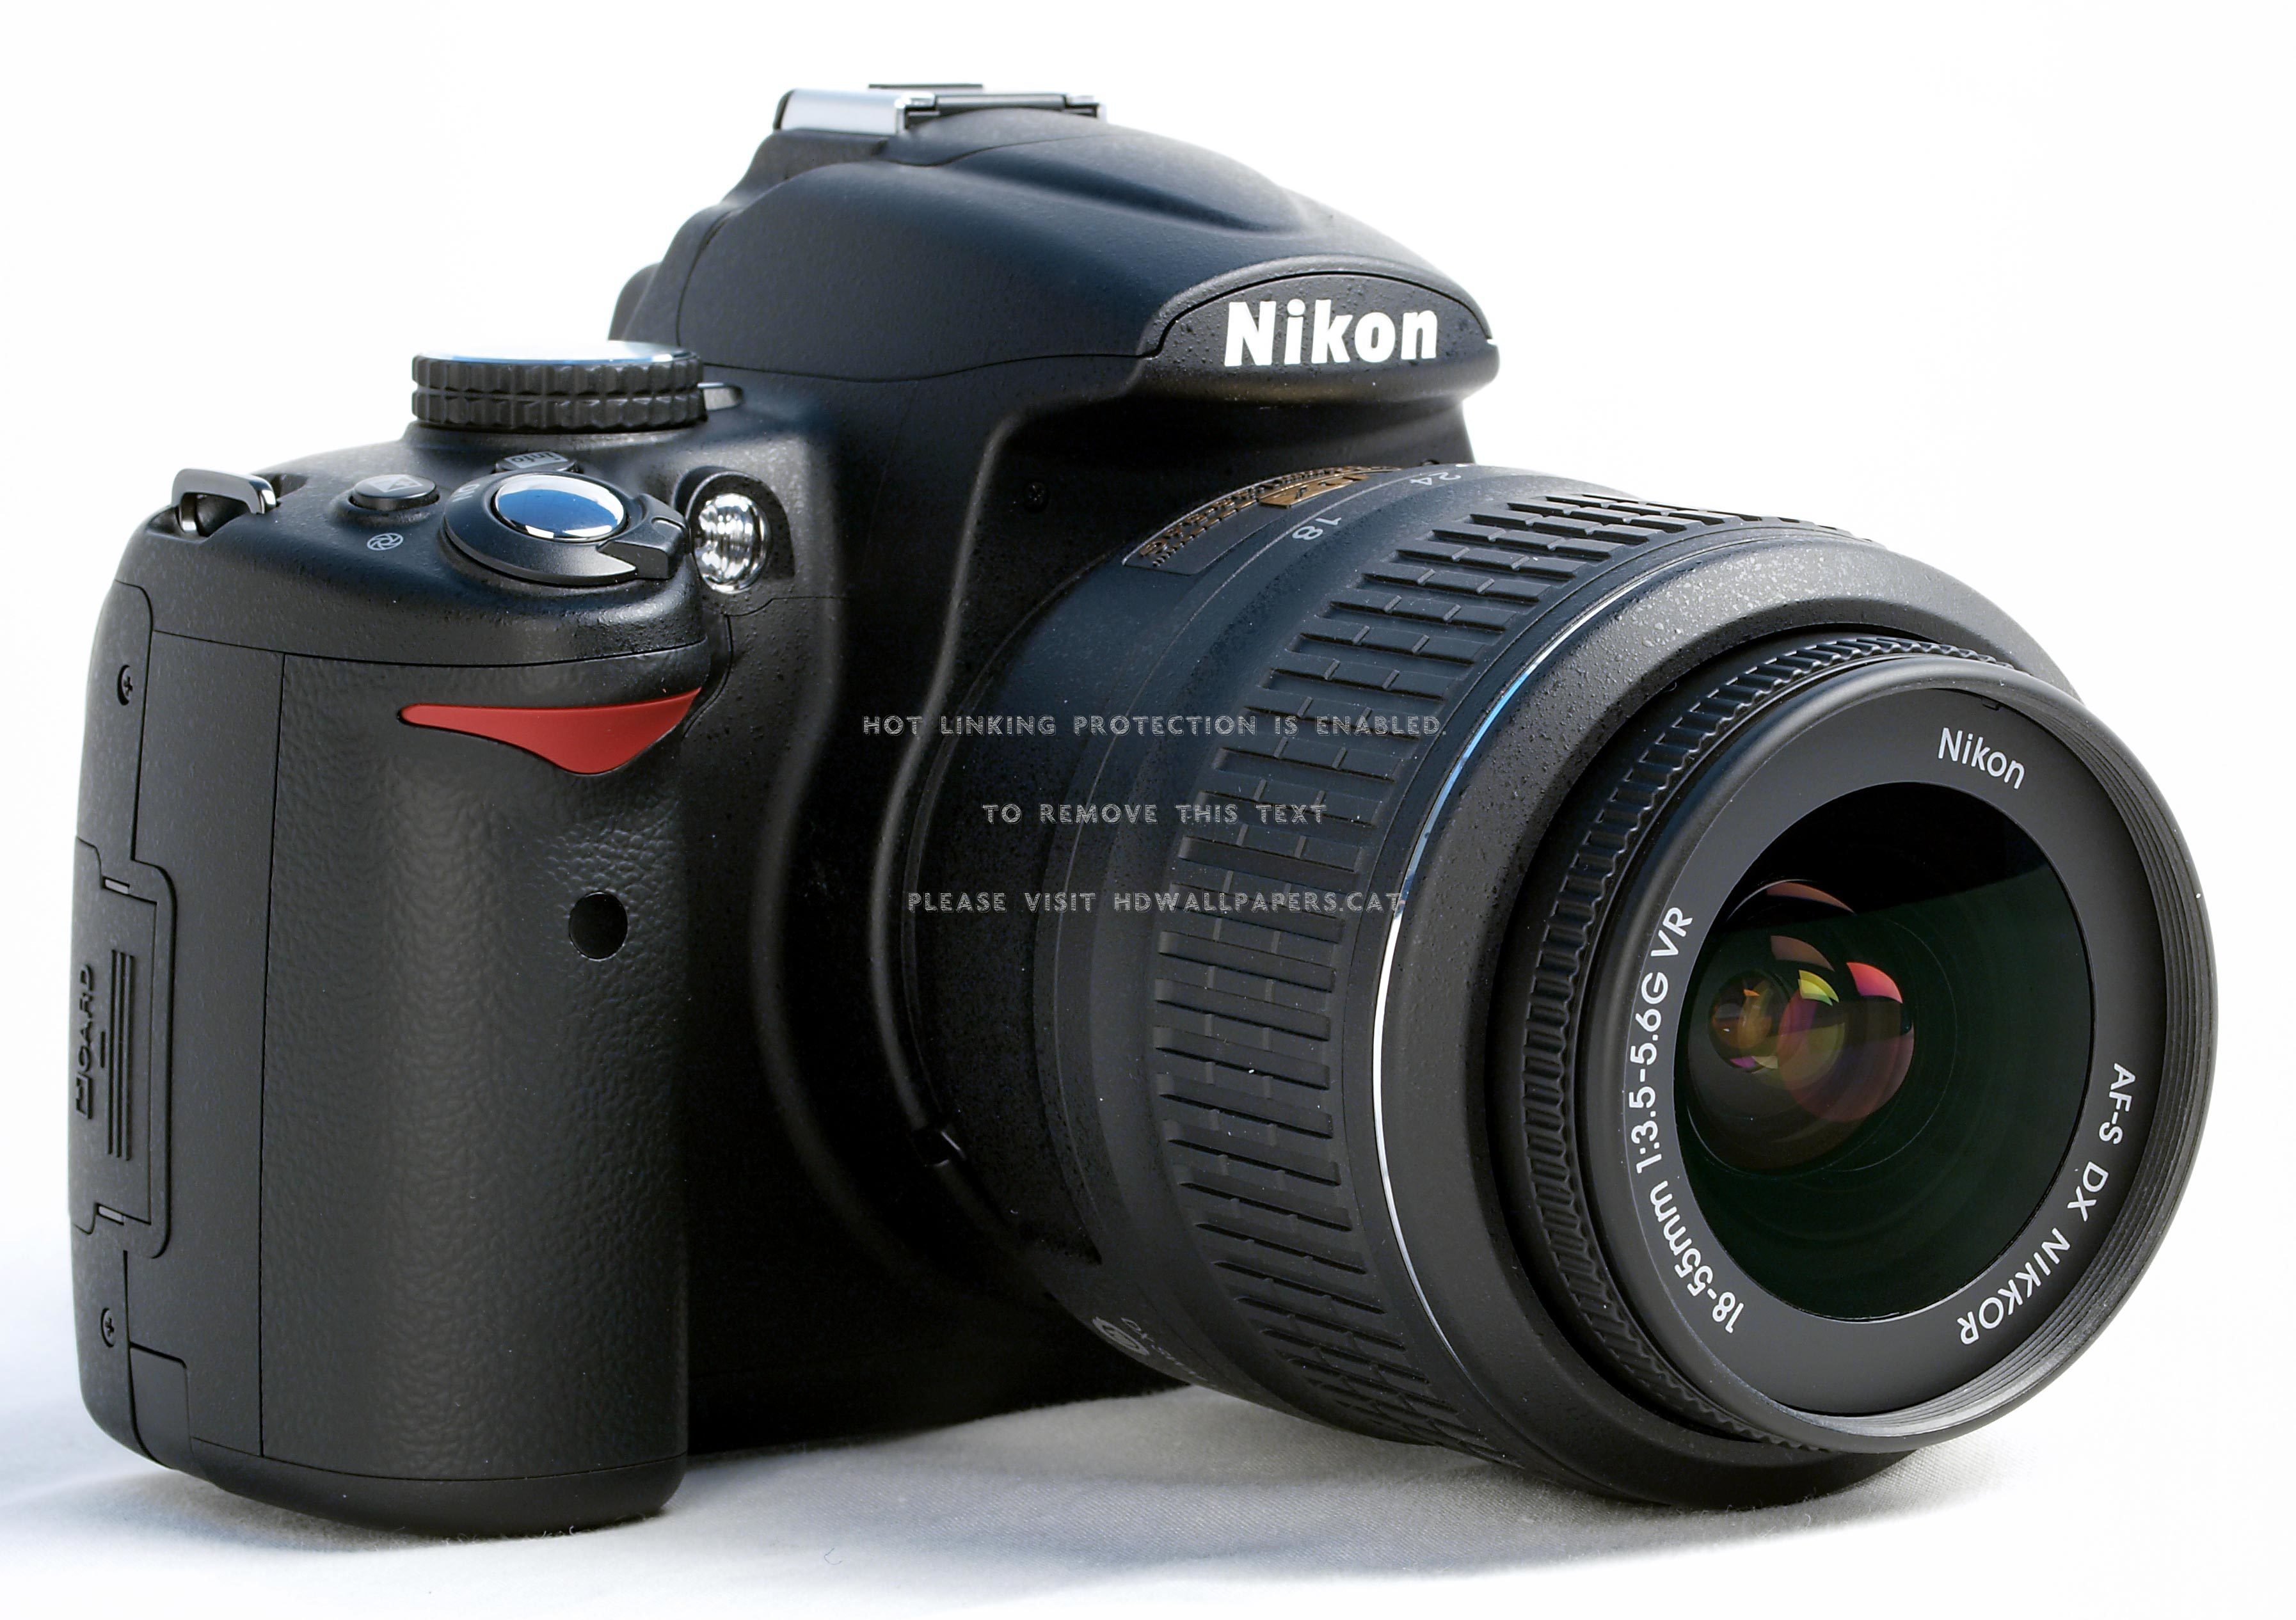 fotocamera nikon wallpaper hd,telecamera,lenti della macchina fotografica,camera digitale,lente,puntare e sparare alla fotocamera